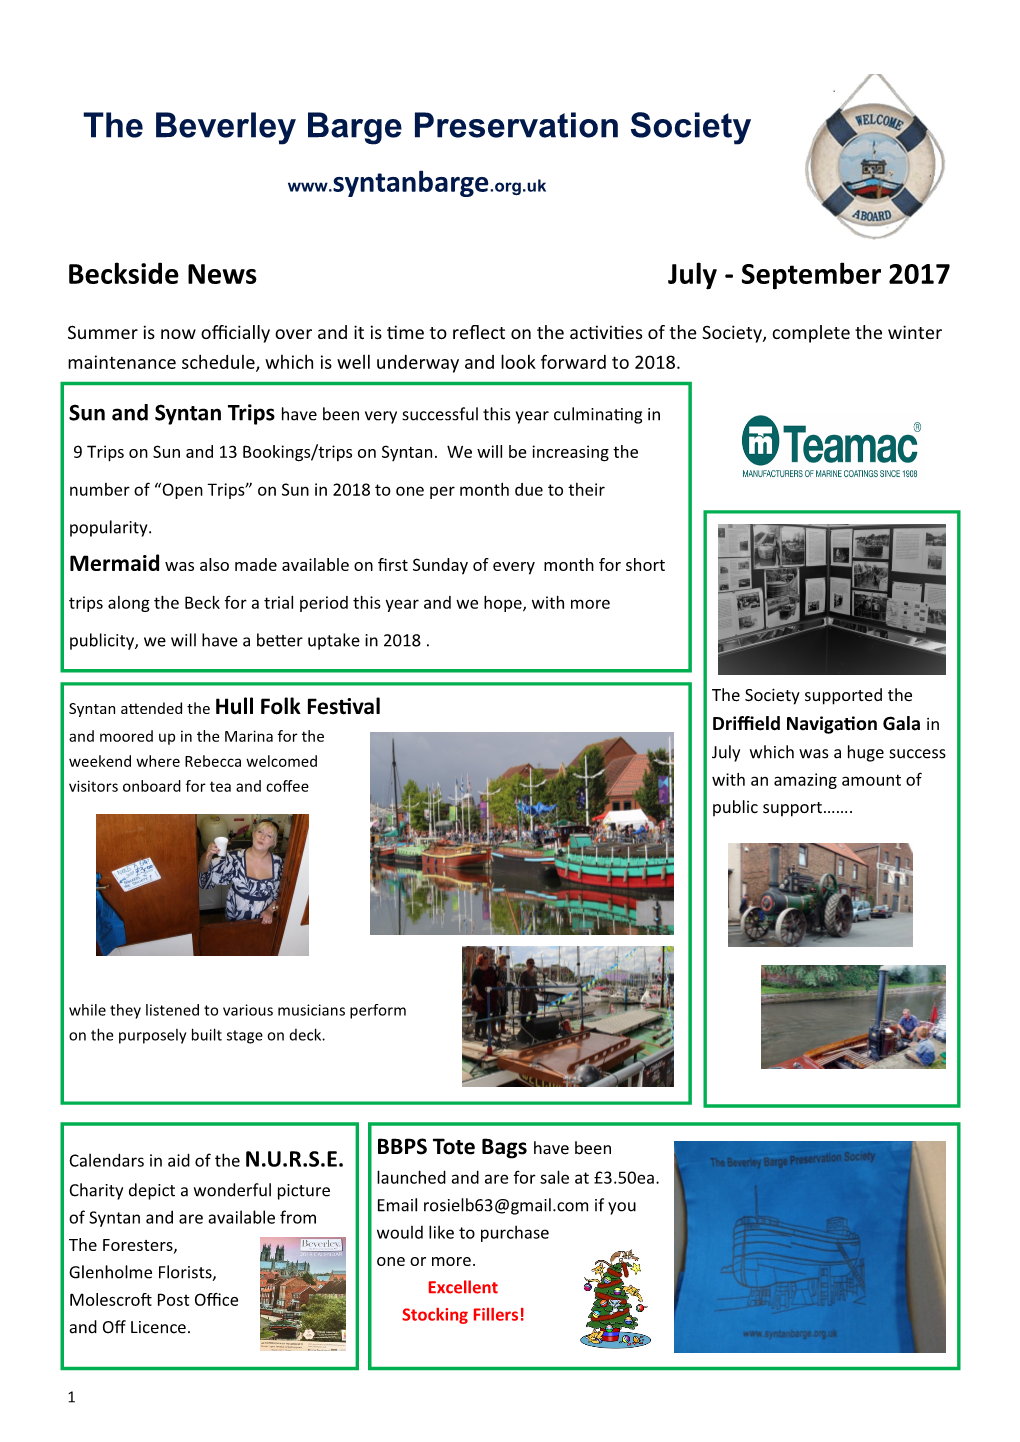 Beckside News, July